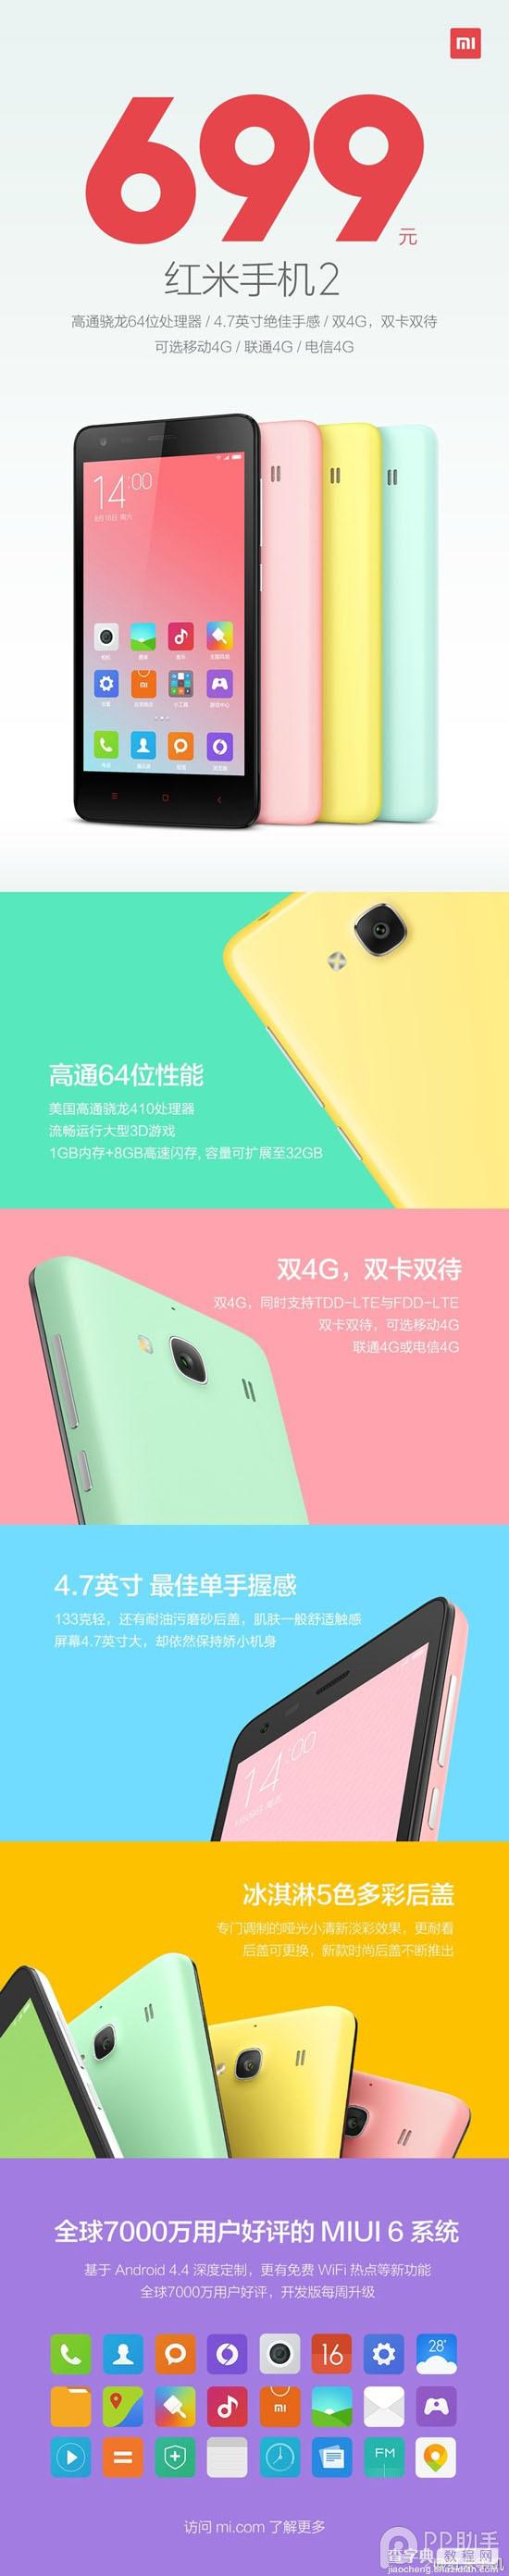 699元红米2在手机QQ开启预约 红米2代预约时间及正式开抢时间3